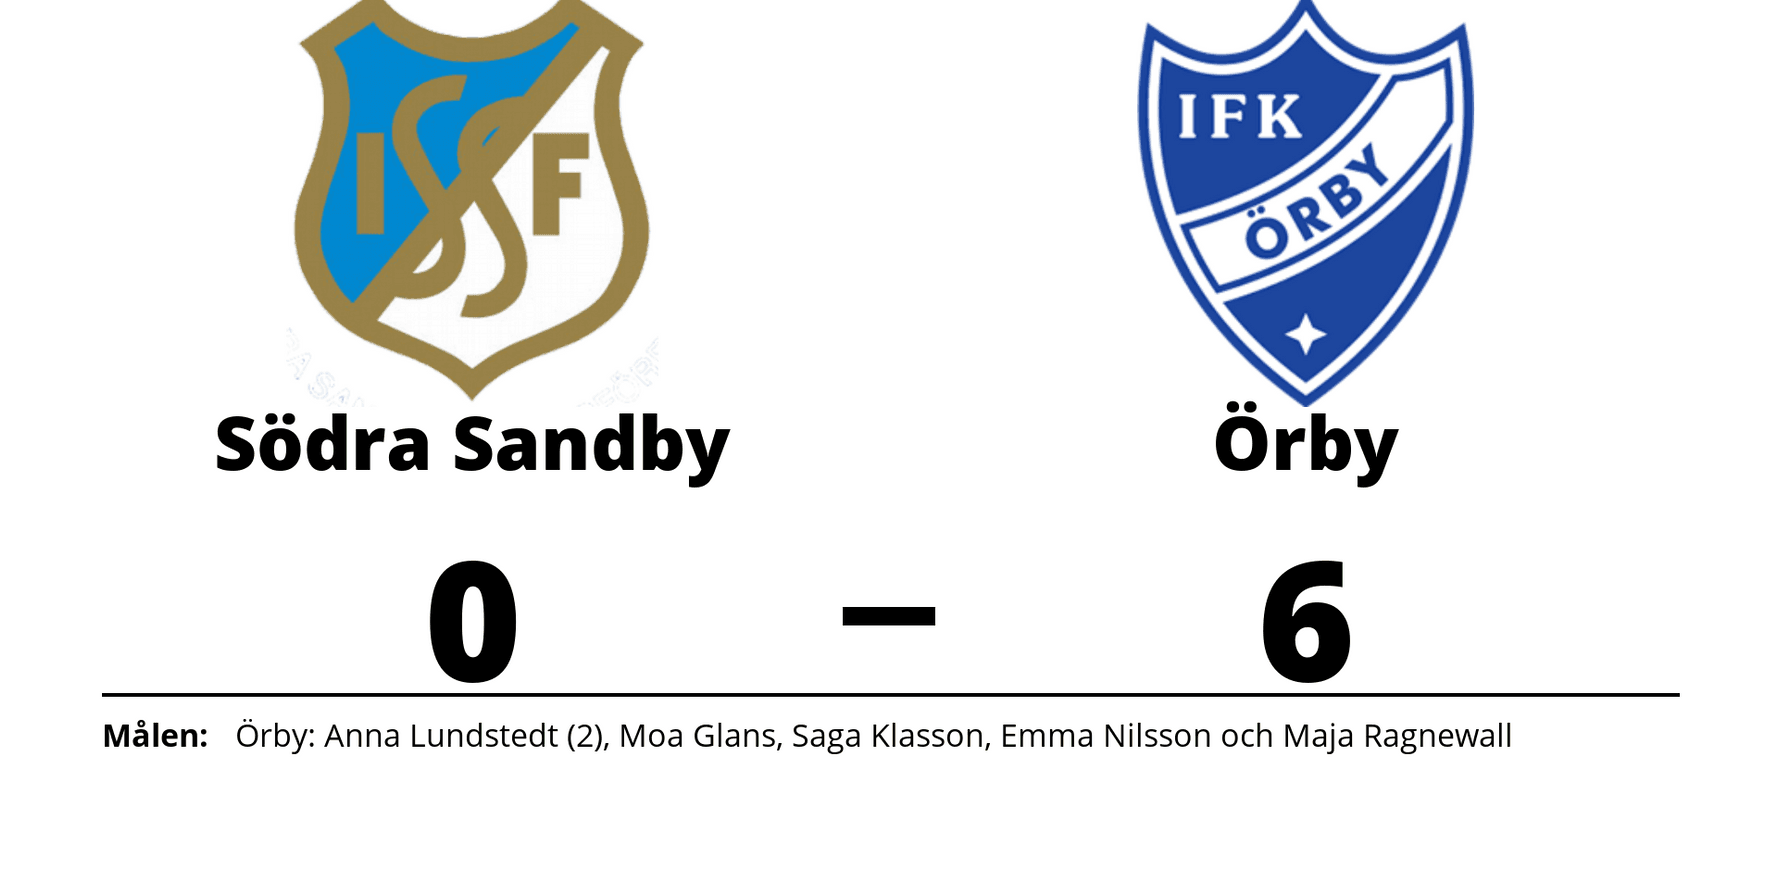 Södra Sandby IF förlorade mot IFK Örby